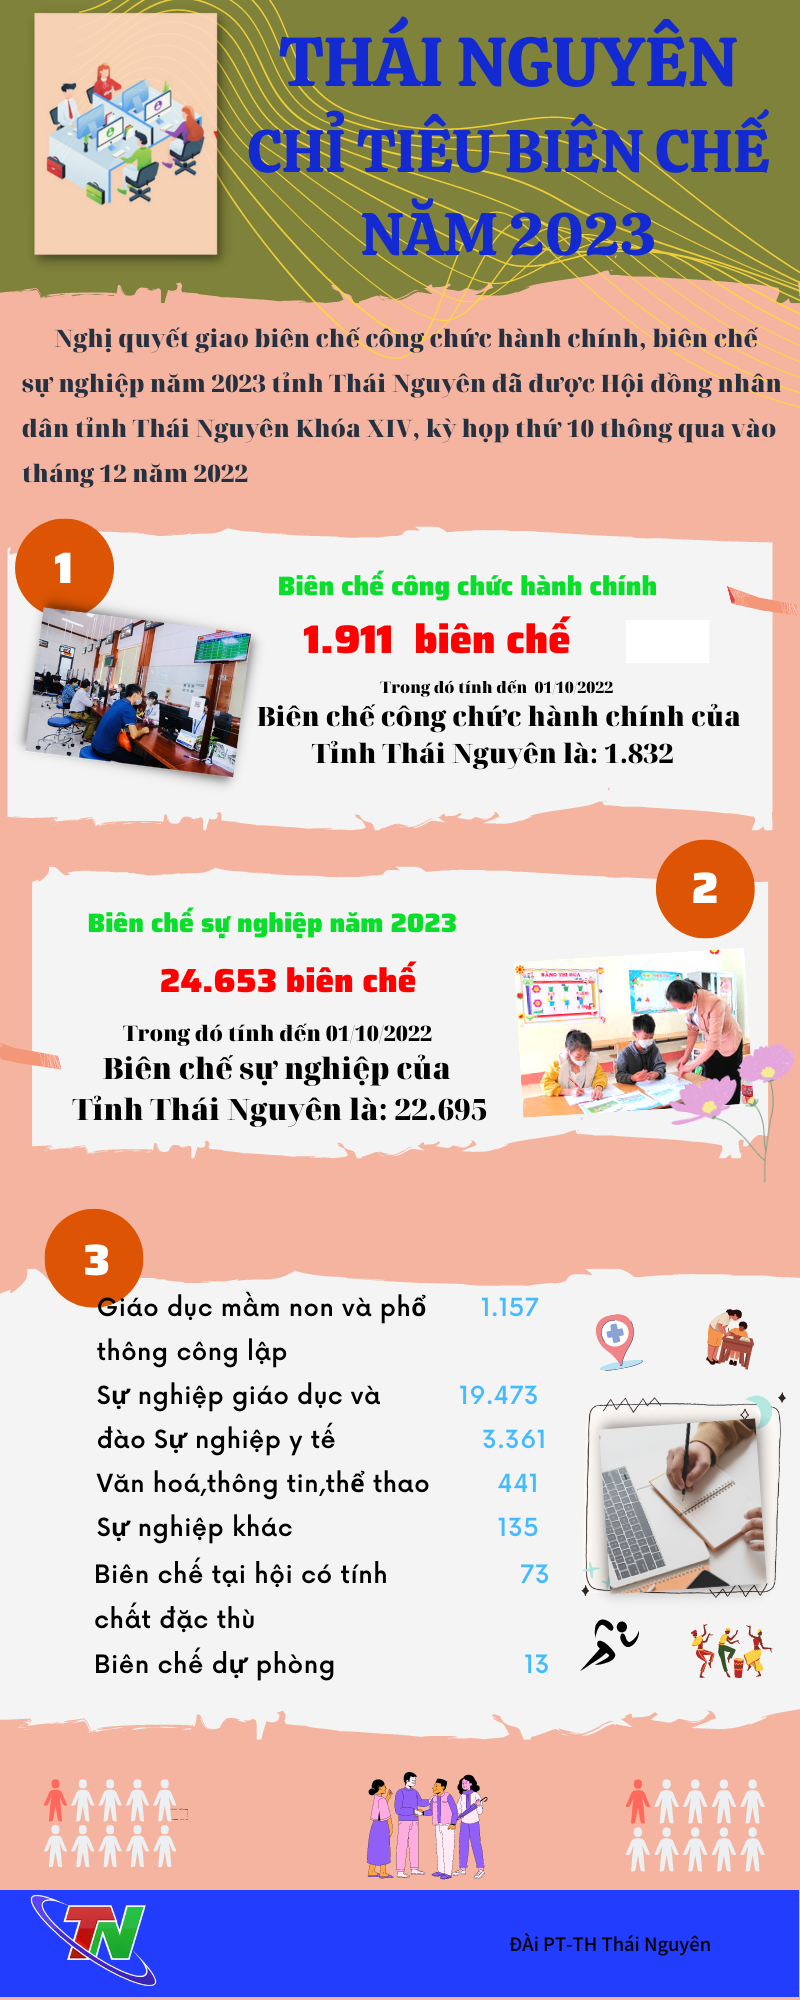 [Infographic] Chỉ tiêu biên chế hành chính, sự nghiệp tỉnh Thái Nguyên năm 2023